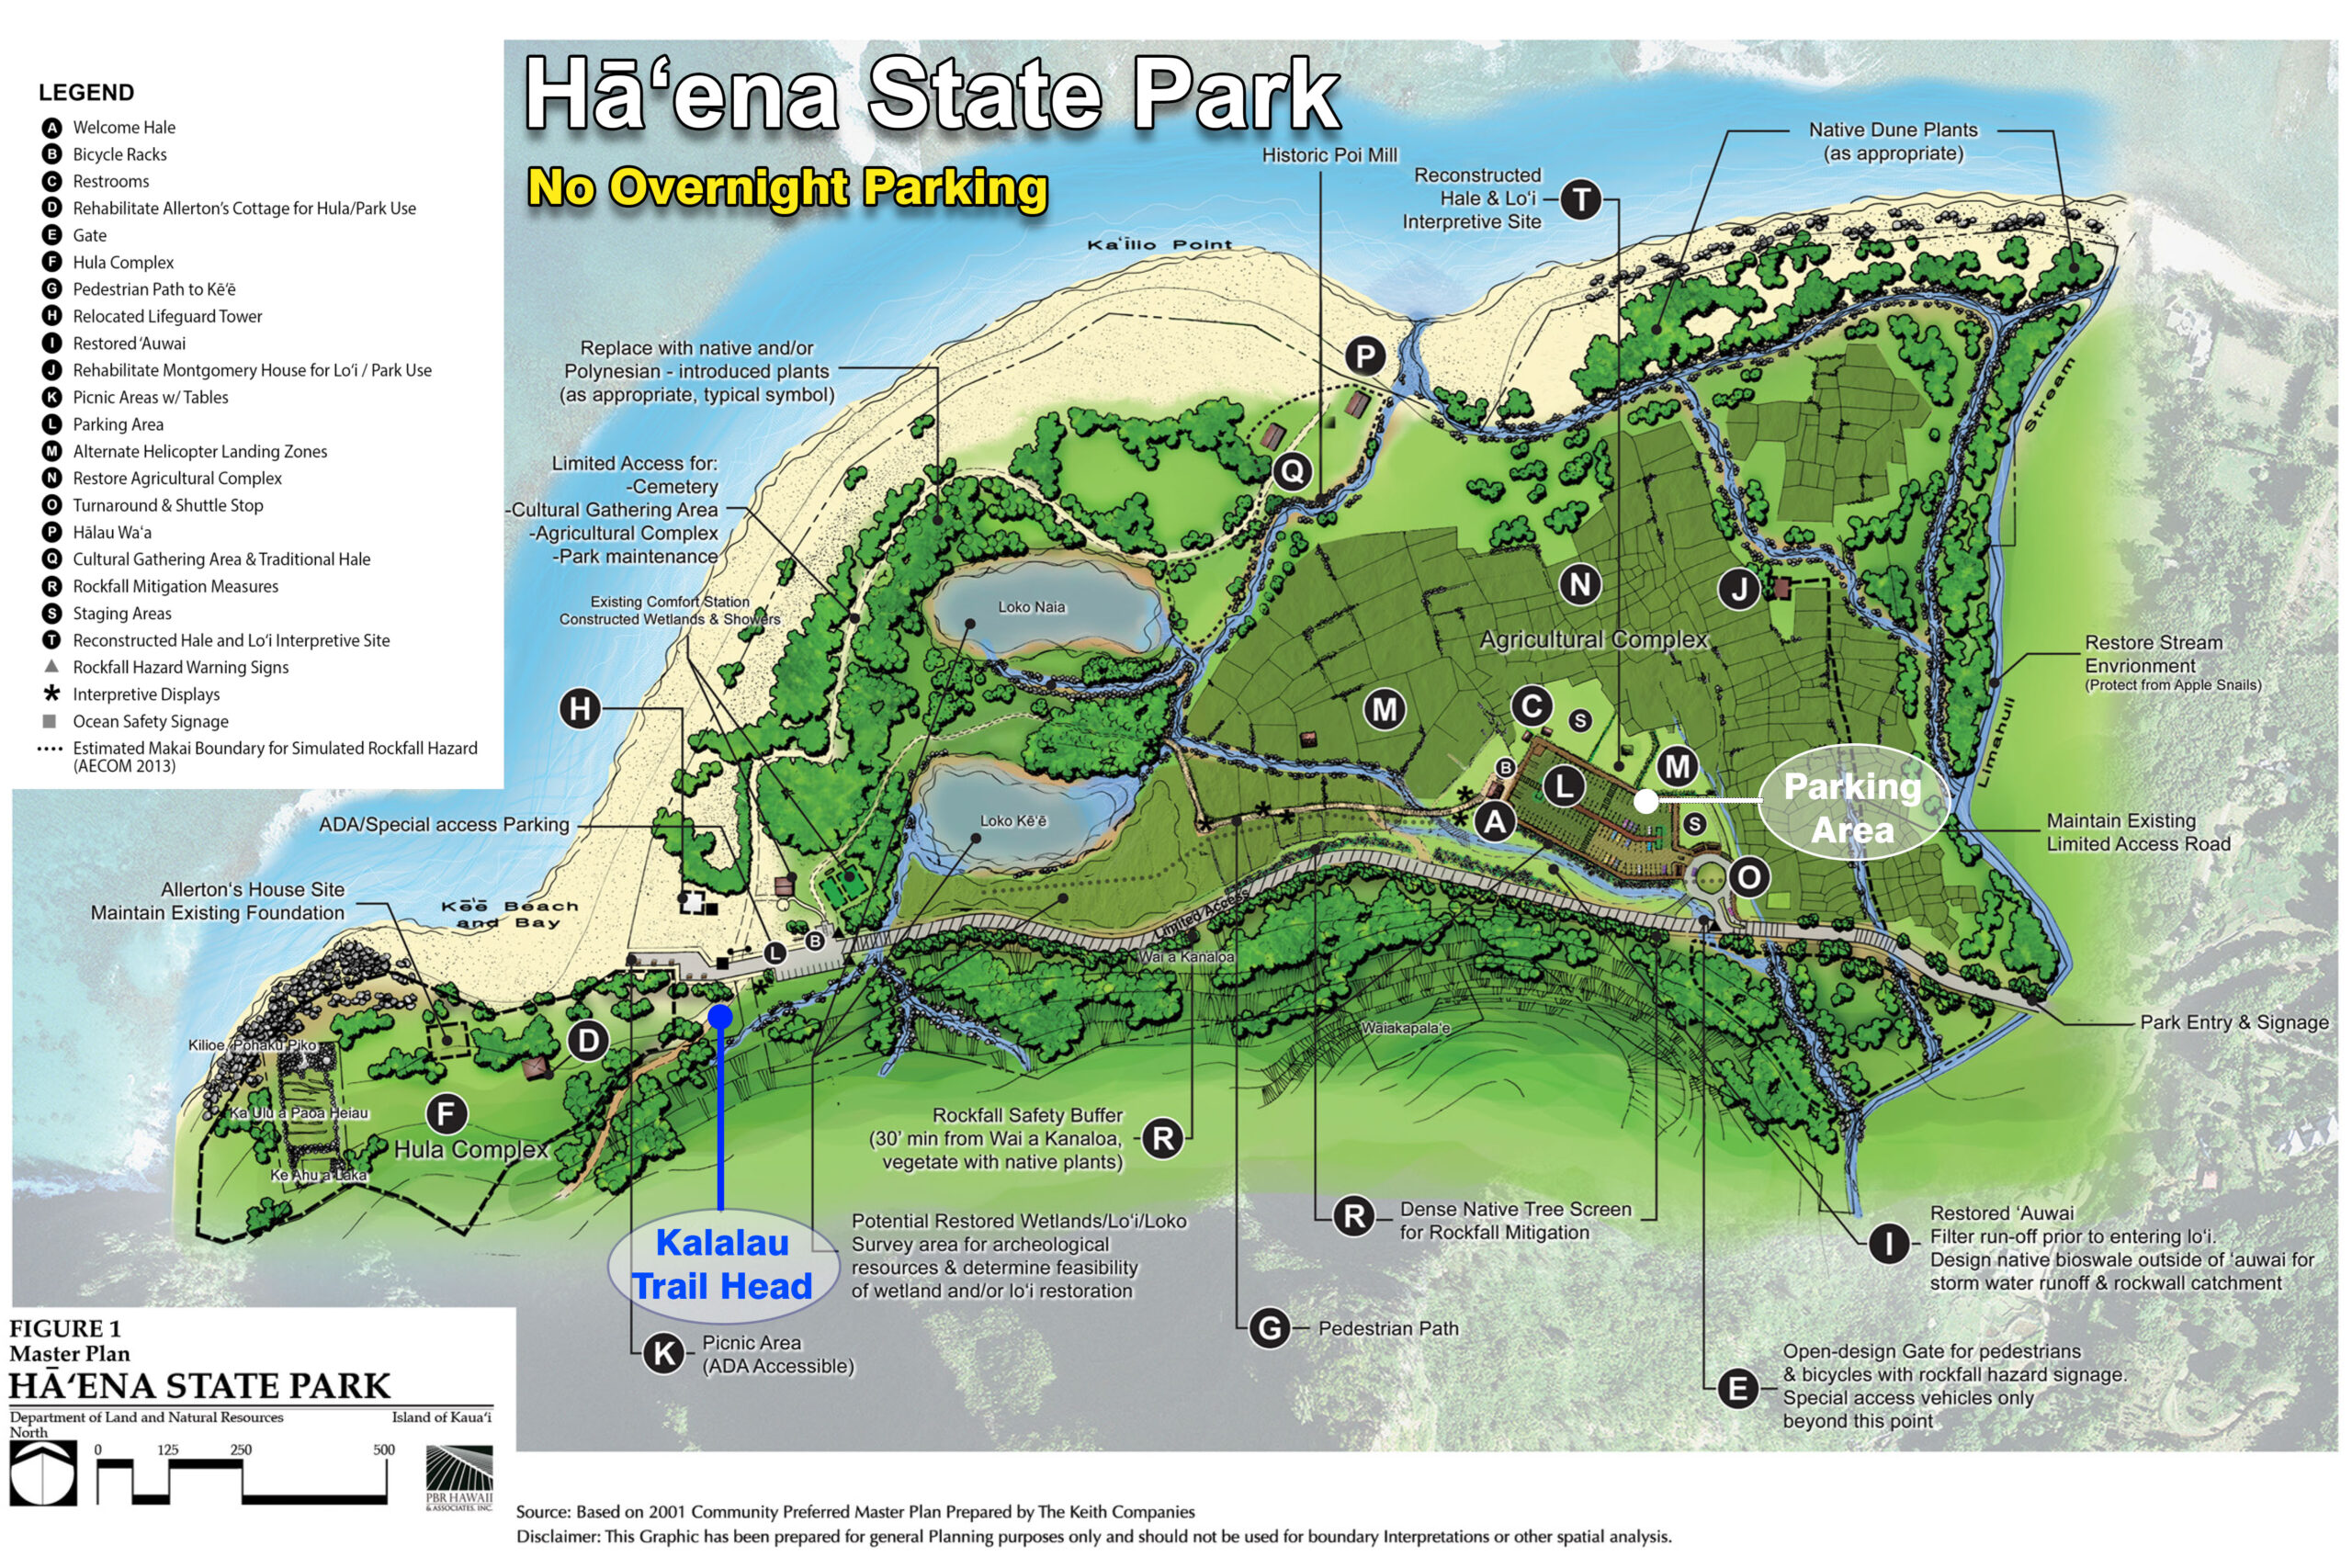 Haena State Park